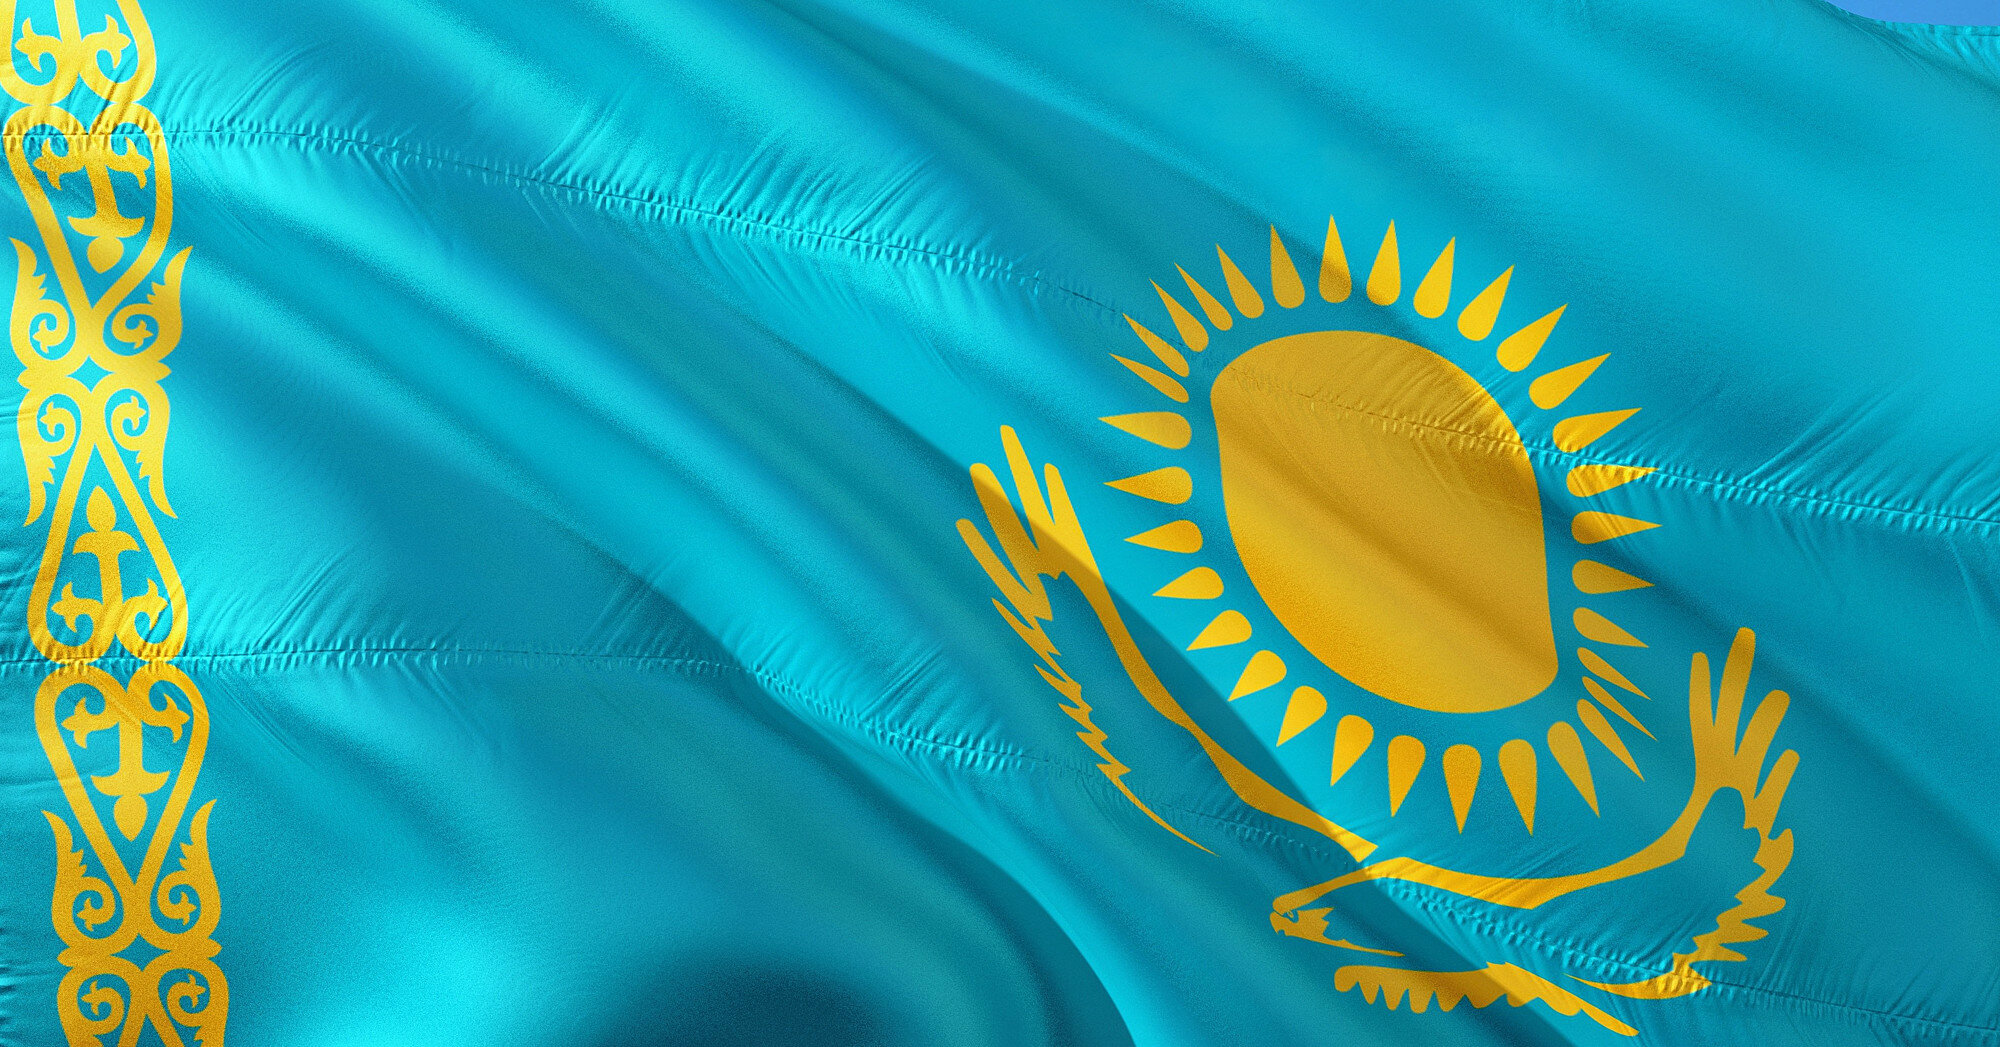 Протесты в Казахстане: в ОДКБ уточнили состав миротворческих сил